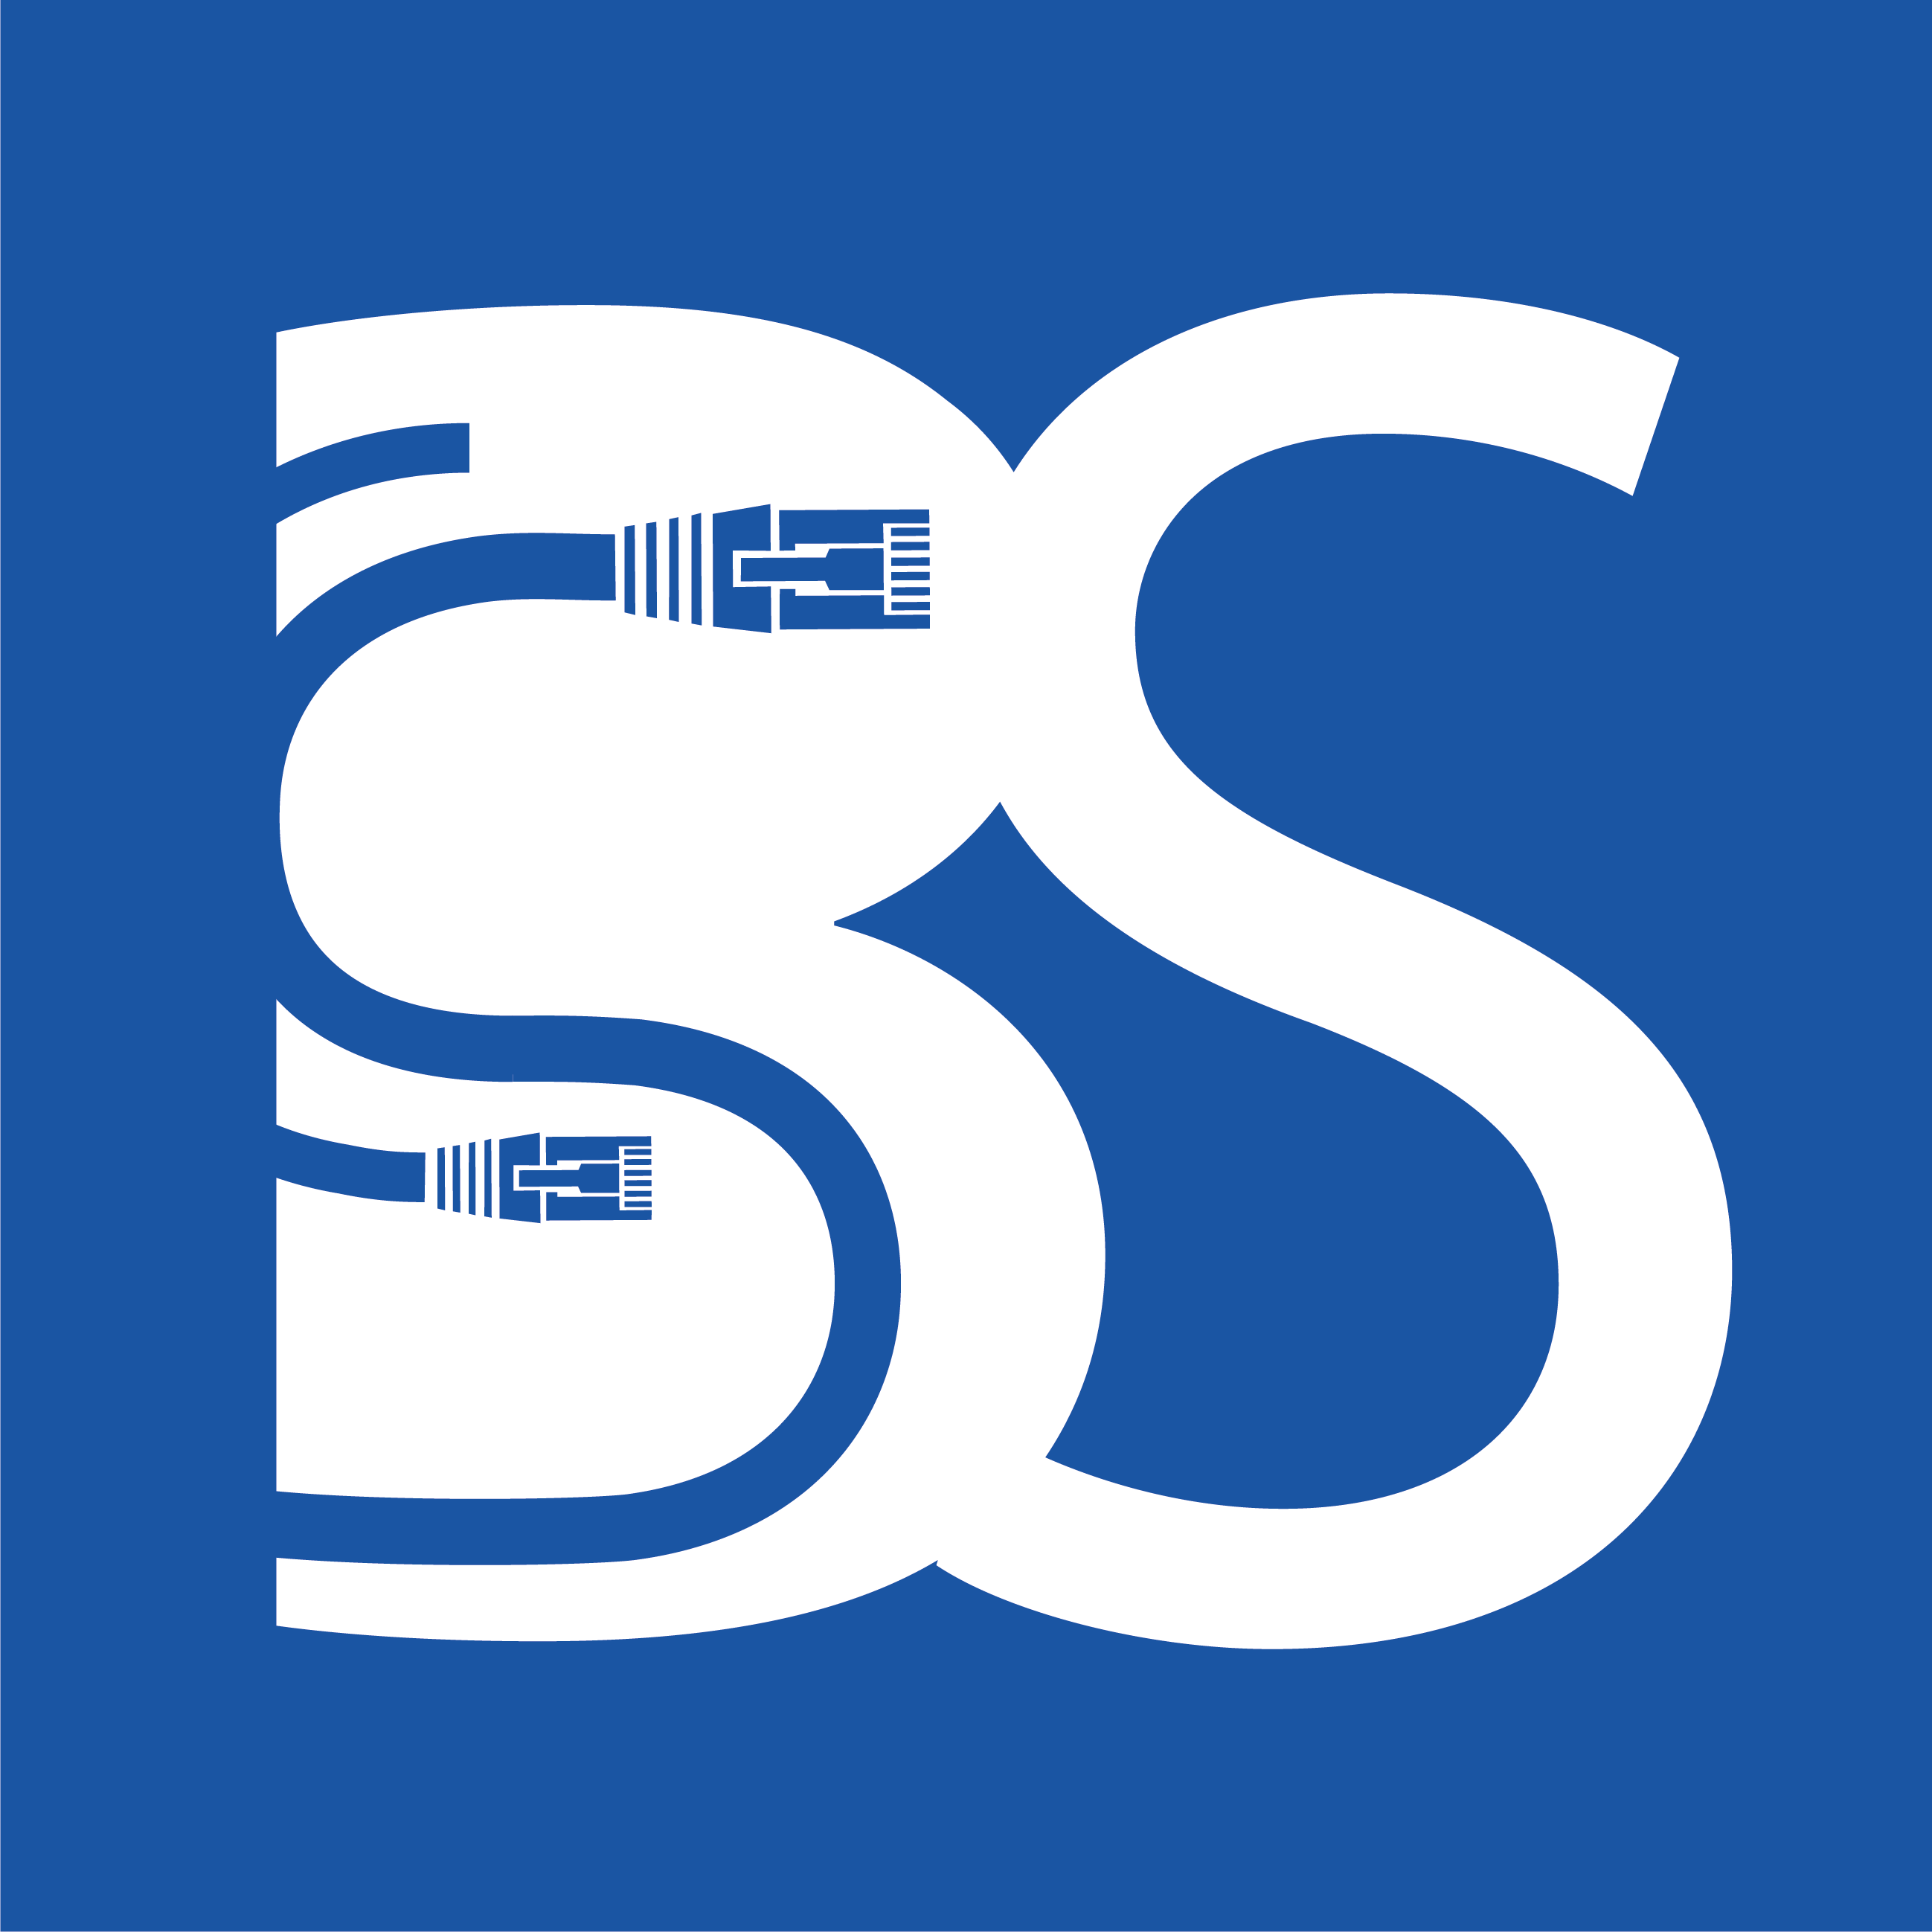 ssi logo design